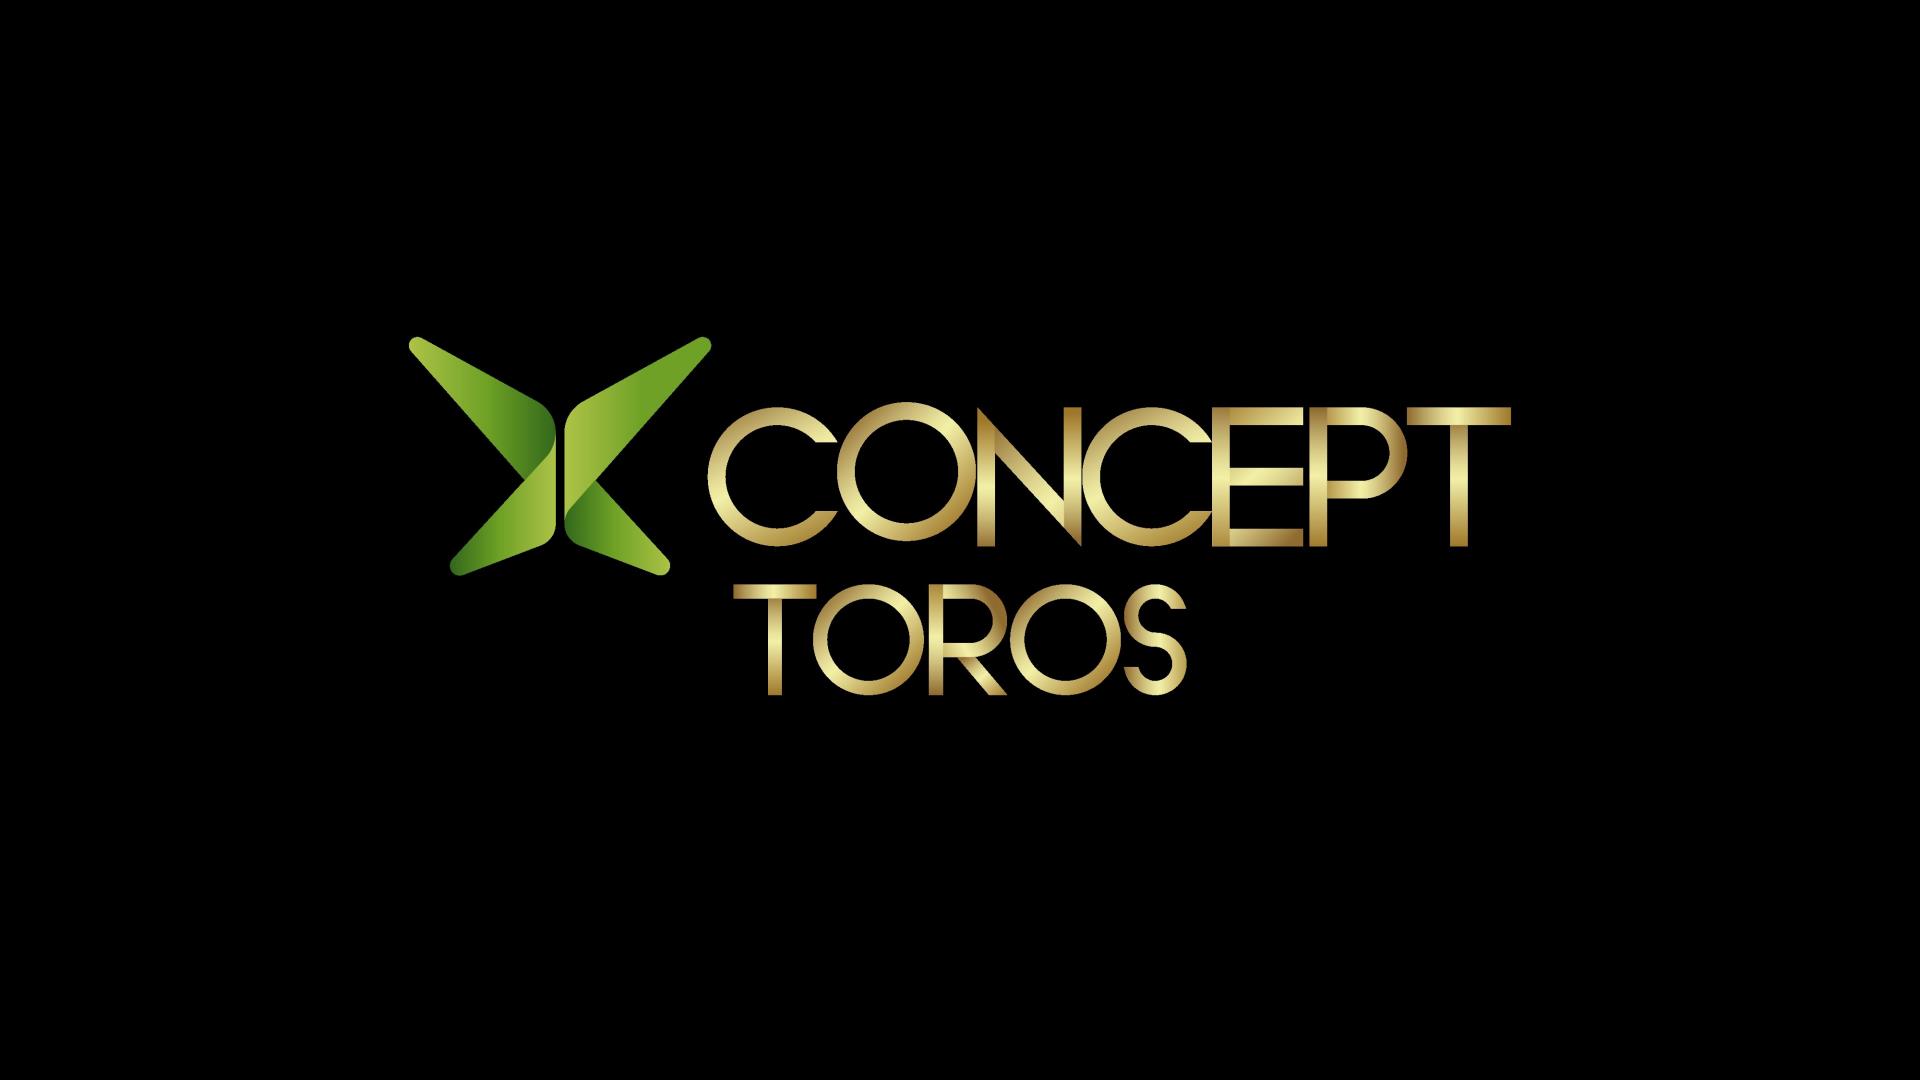 X Concept Toros